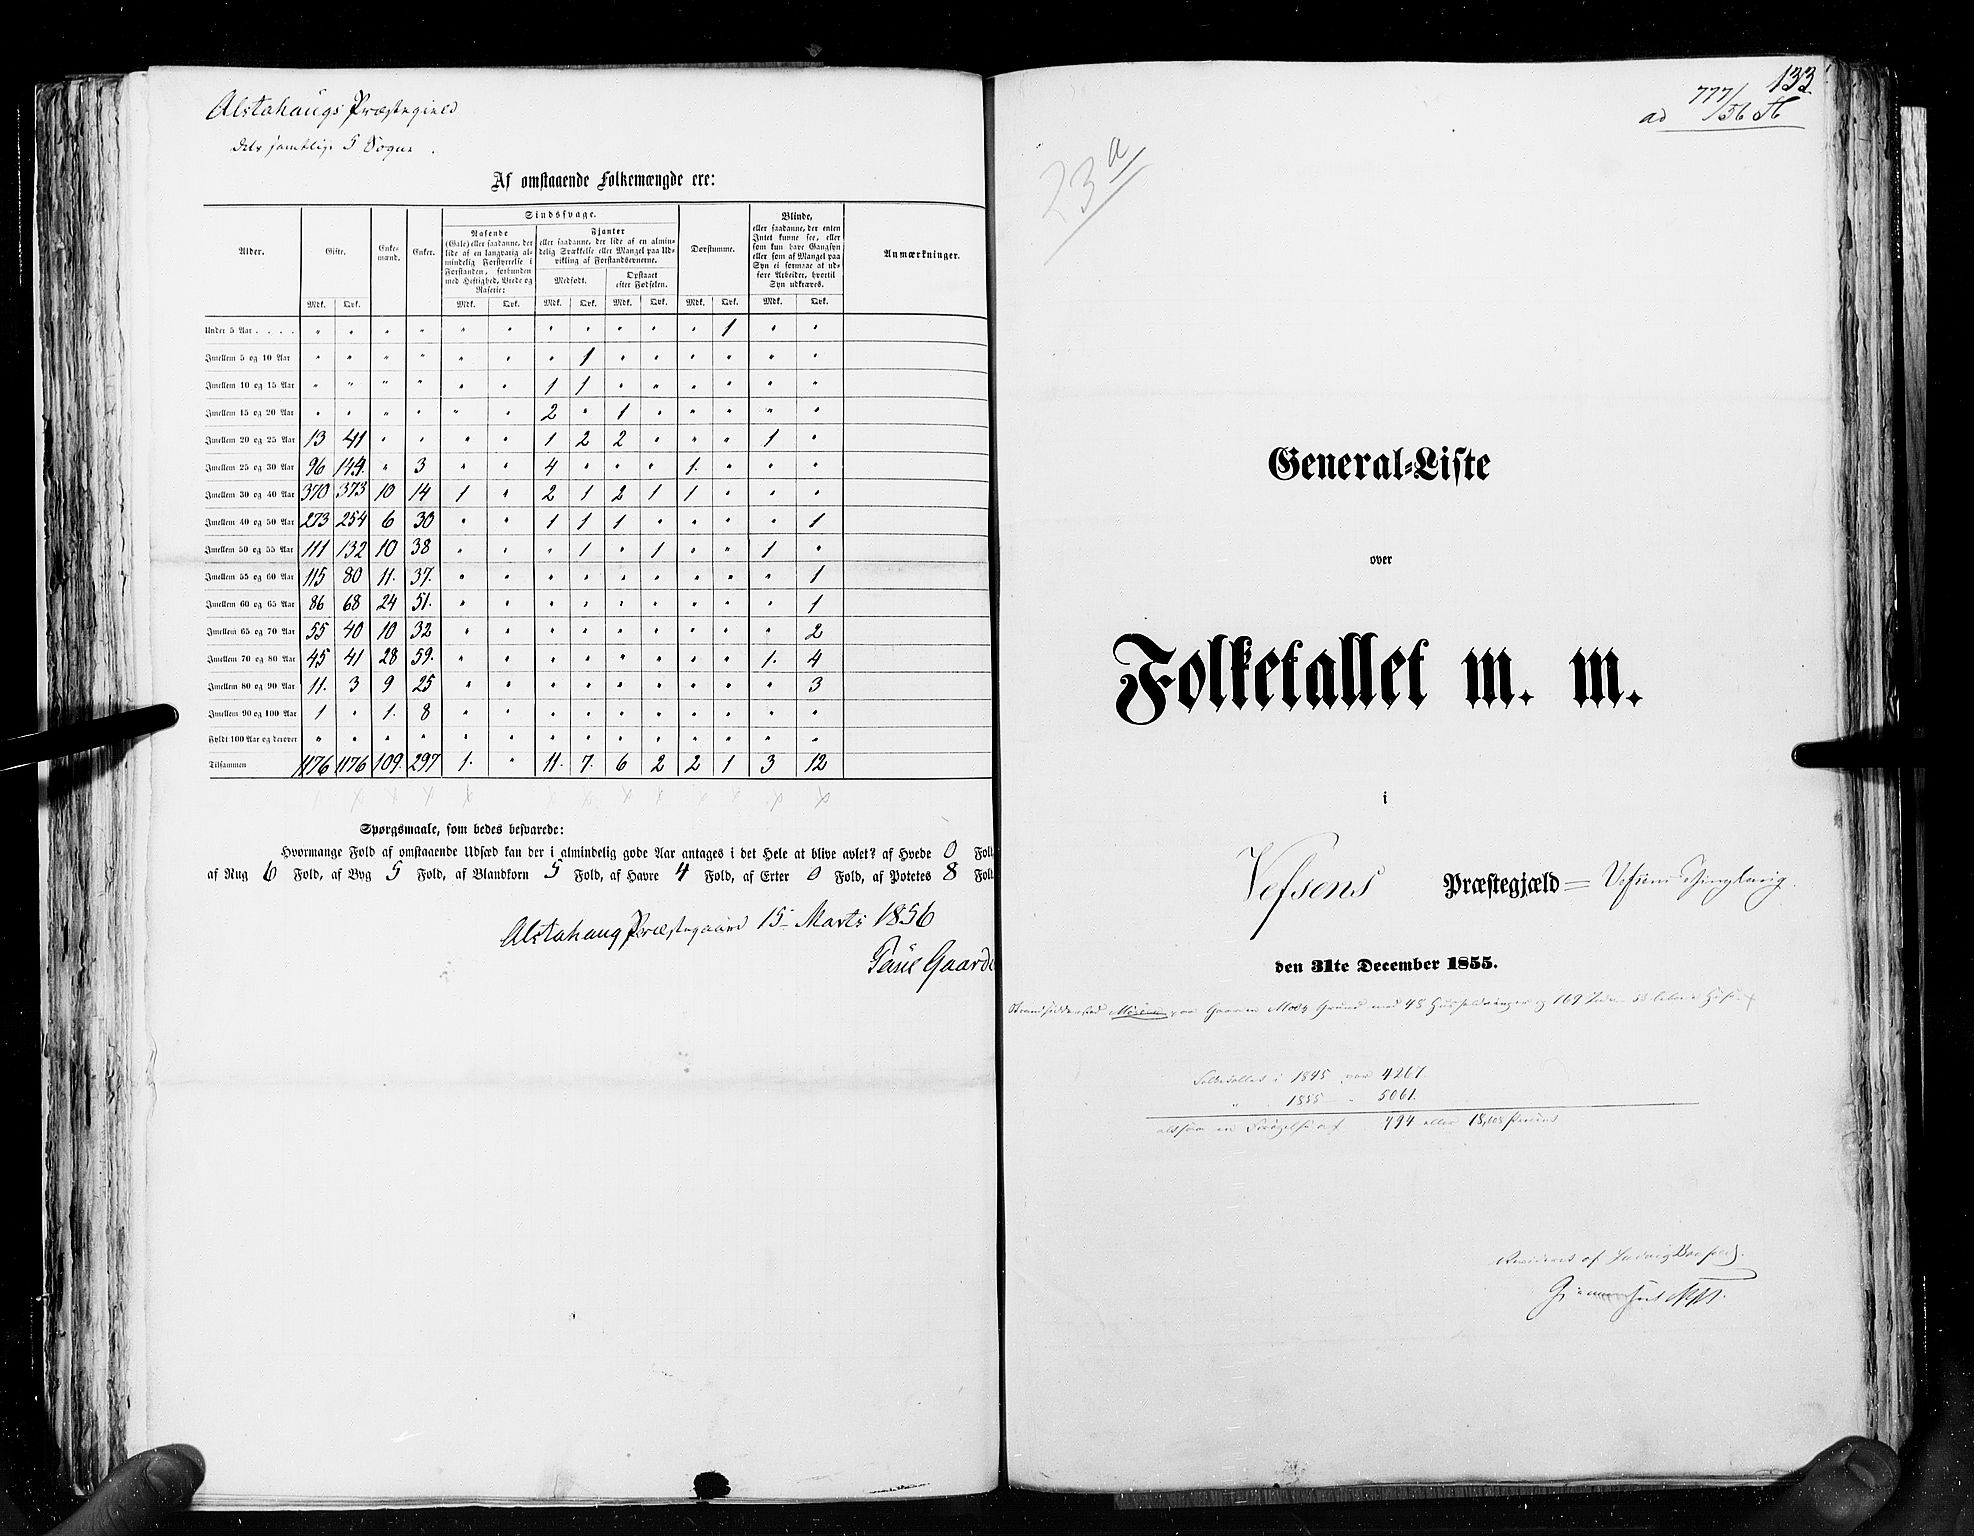 RA, Folketellingen 1855, bind 6A: Nordre Trondhjem amt og Nordland amt, 1855, s. 133